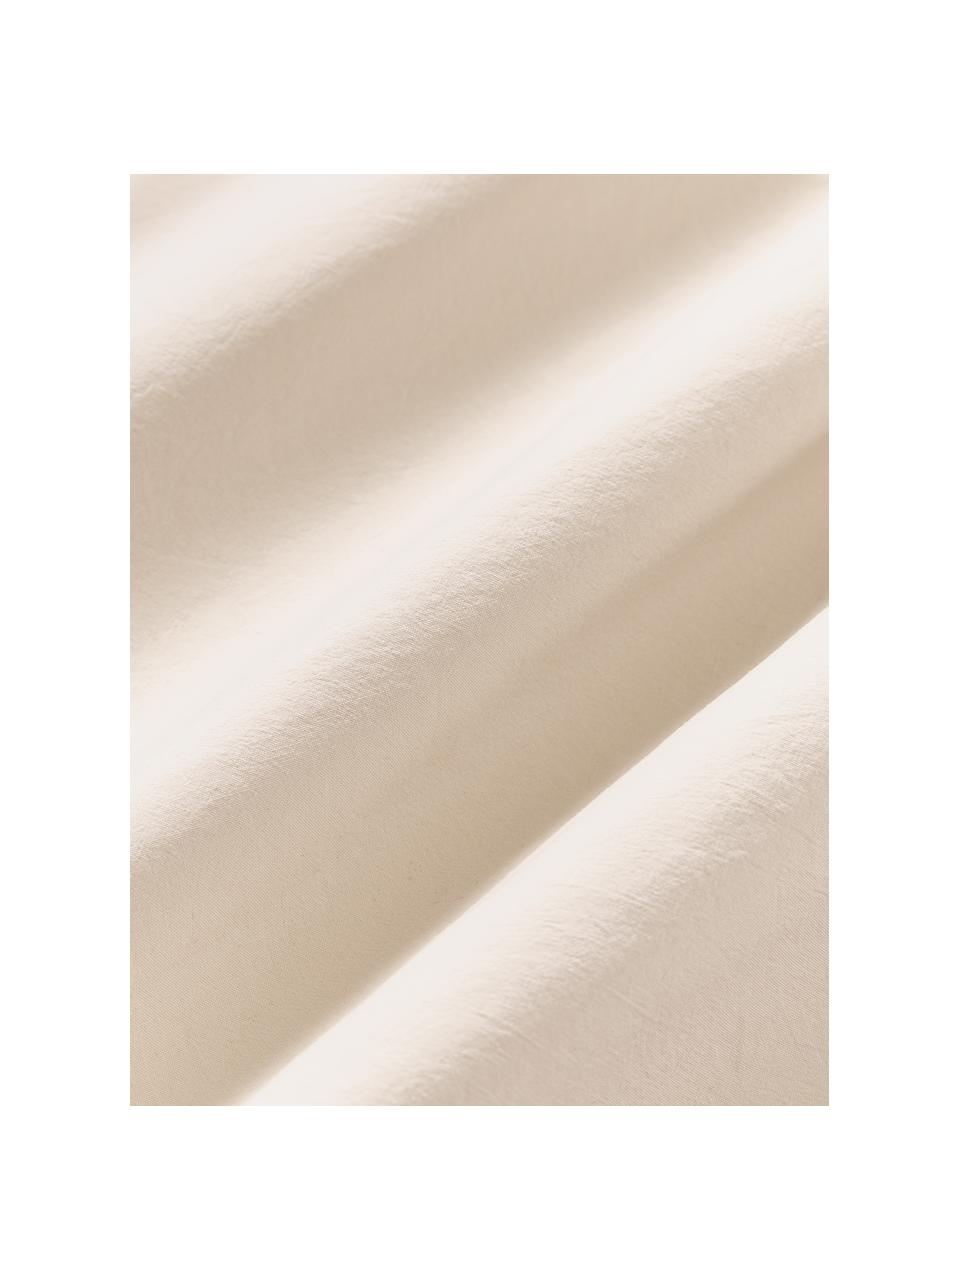 Gewaschener Baumwoll-Bettdeckenbezug Darlyn, 100 % Baumwolle
Fadendichte 150, Standard Qualität

Bettwäsche aus Baumwolle fühlt sich auf der Haut angenehm weich an, nimmt Feuchtigkeit gut auf und eignet sich für Allergiker.

Durch ein besonderes Waschungsverfahren erhält der Stoff eine robuste, unregelmässige Stonewash-Optik. Ausserdem wird der Stoff dadurch weich und geschmeidig im Griff und erhält eine natürliche Knitter-Optik, die kein Bügeln erfordert und Gemütlichkeit ausstrahlt.

Das in diesem Produkt verwendete Material ist schadstoffgeprüft und zertifiziert nach STANDARD 100 by OEKO-TEX®, 4265CIT, CITEVE, Beige, B 200 x L 200 cm